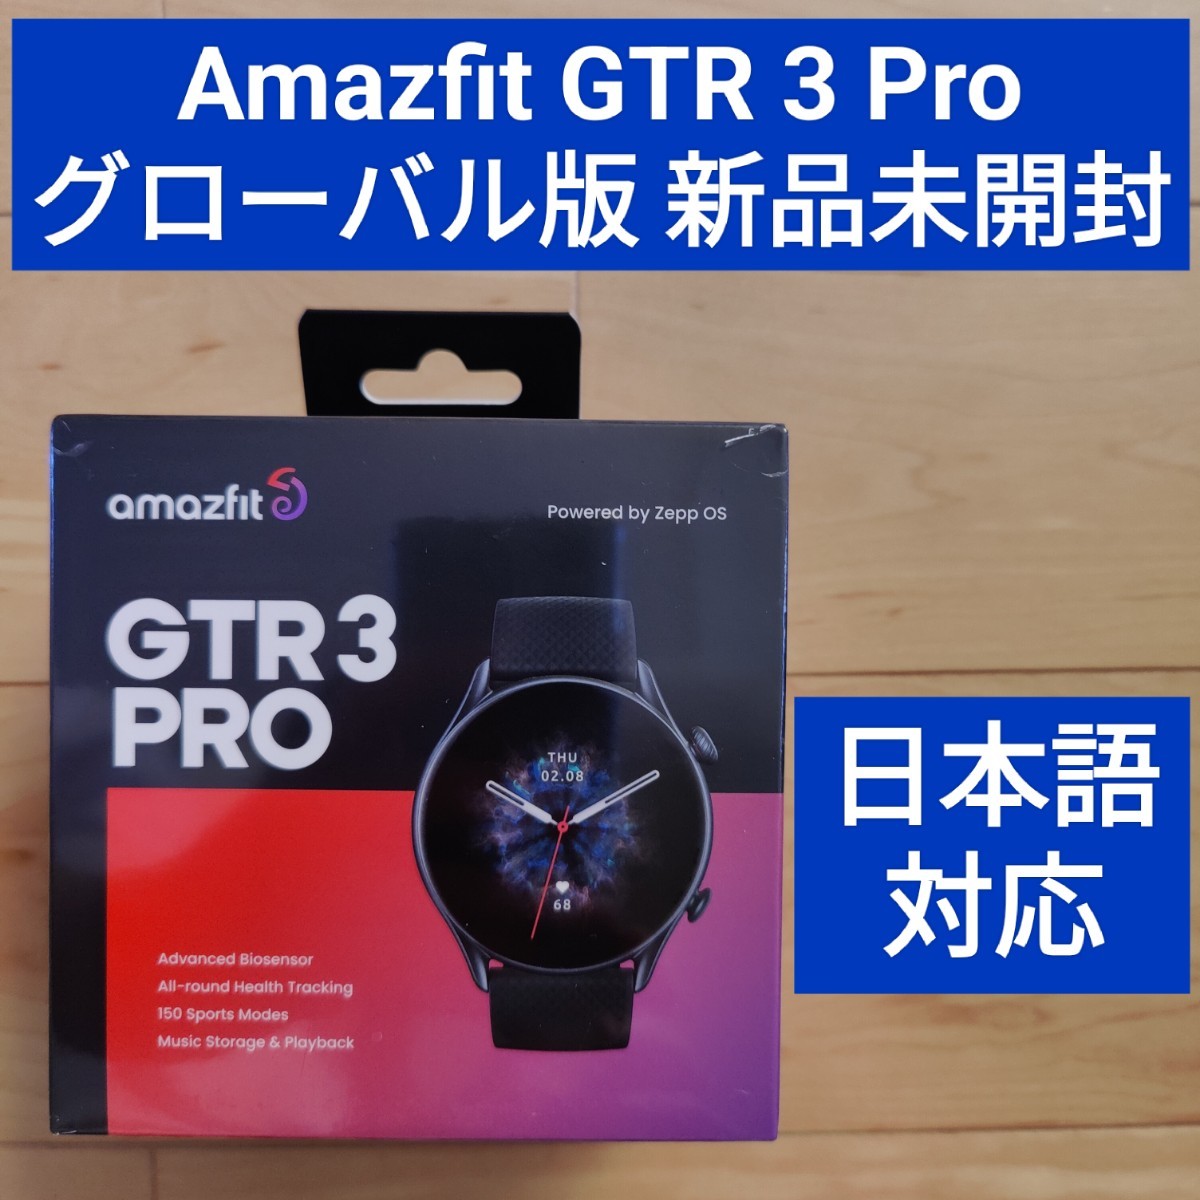 感謝の声続々！ 美品 スマートウォッチ グローバル版 ブラック pro gtr3 amazfit - 腕時計(デジタル) - hlt.no